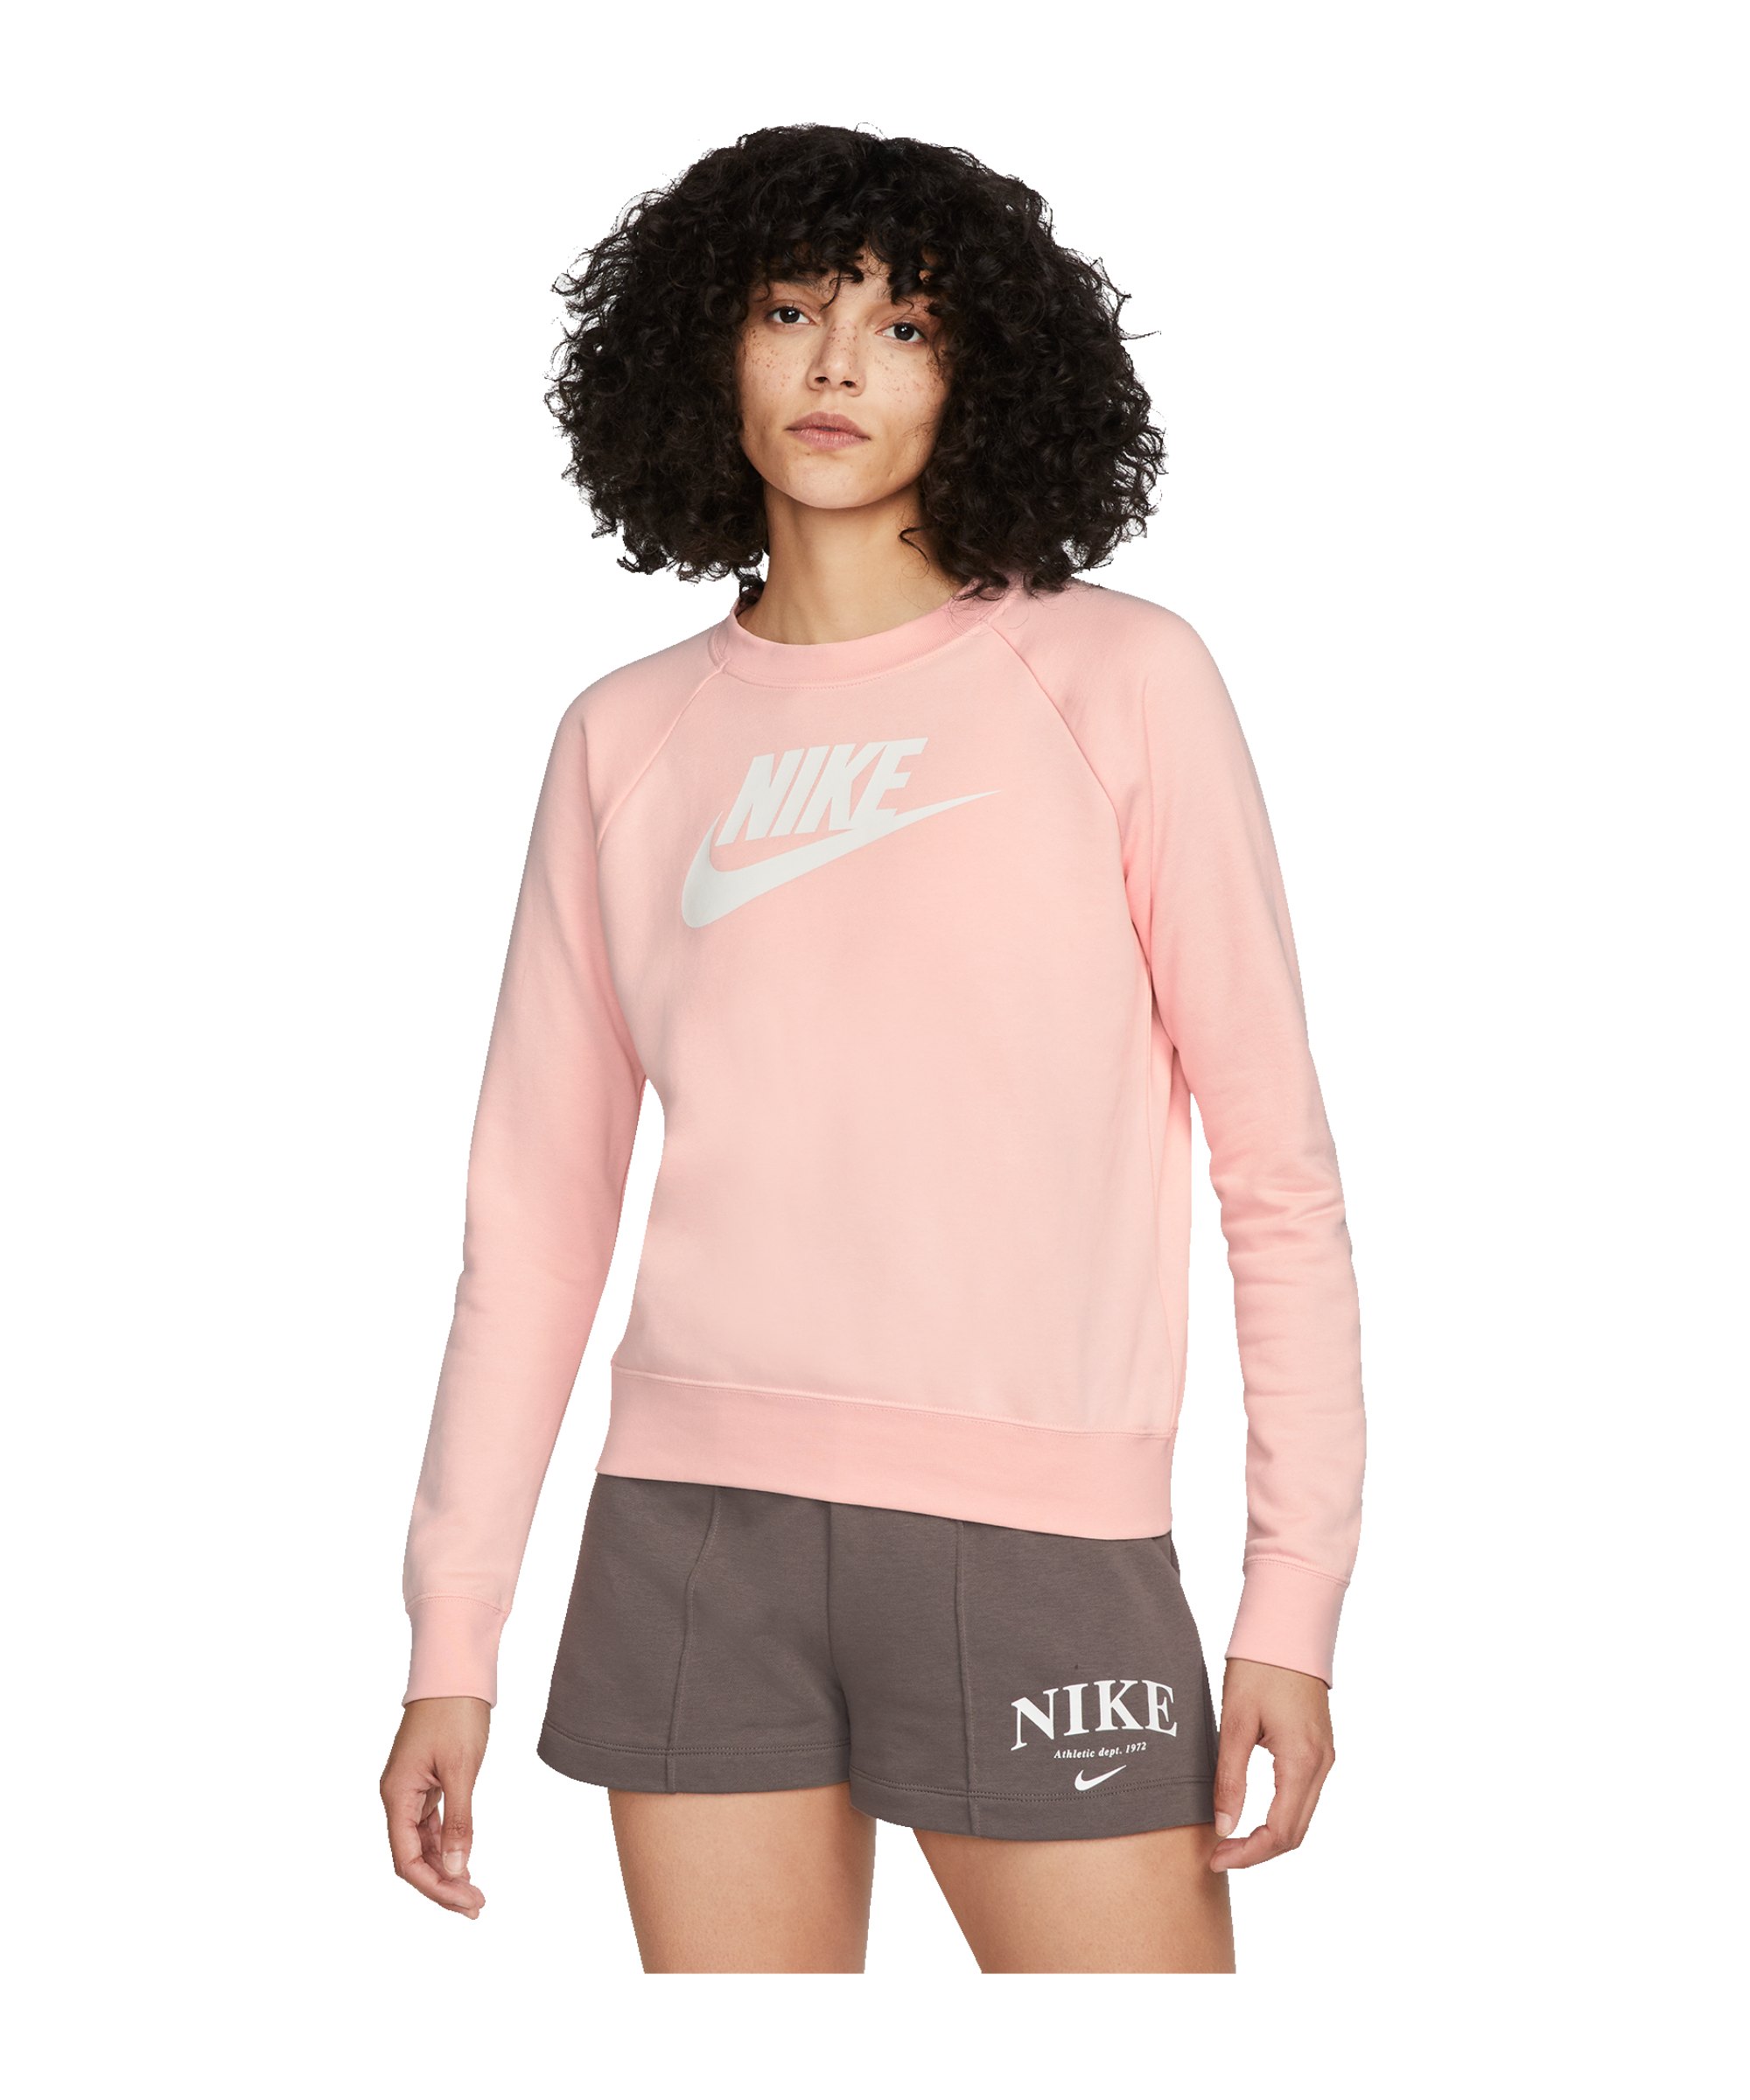 Nike Crew Fleece Sweatshirt Damen Rosa F611 - rosa